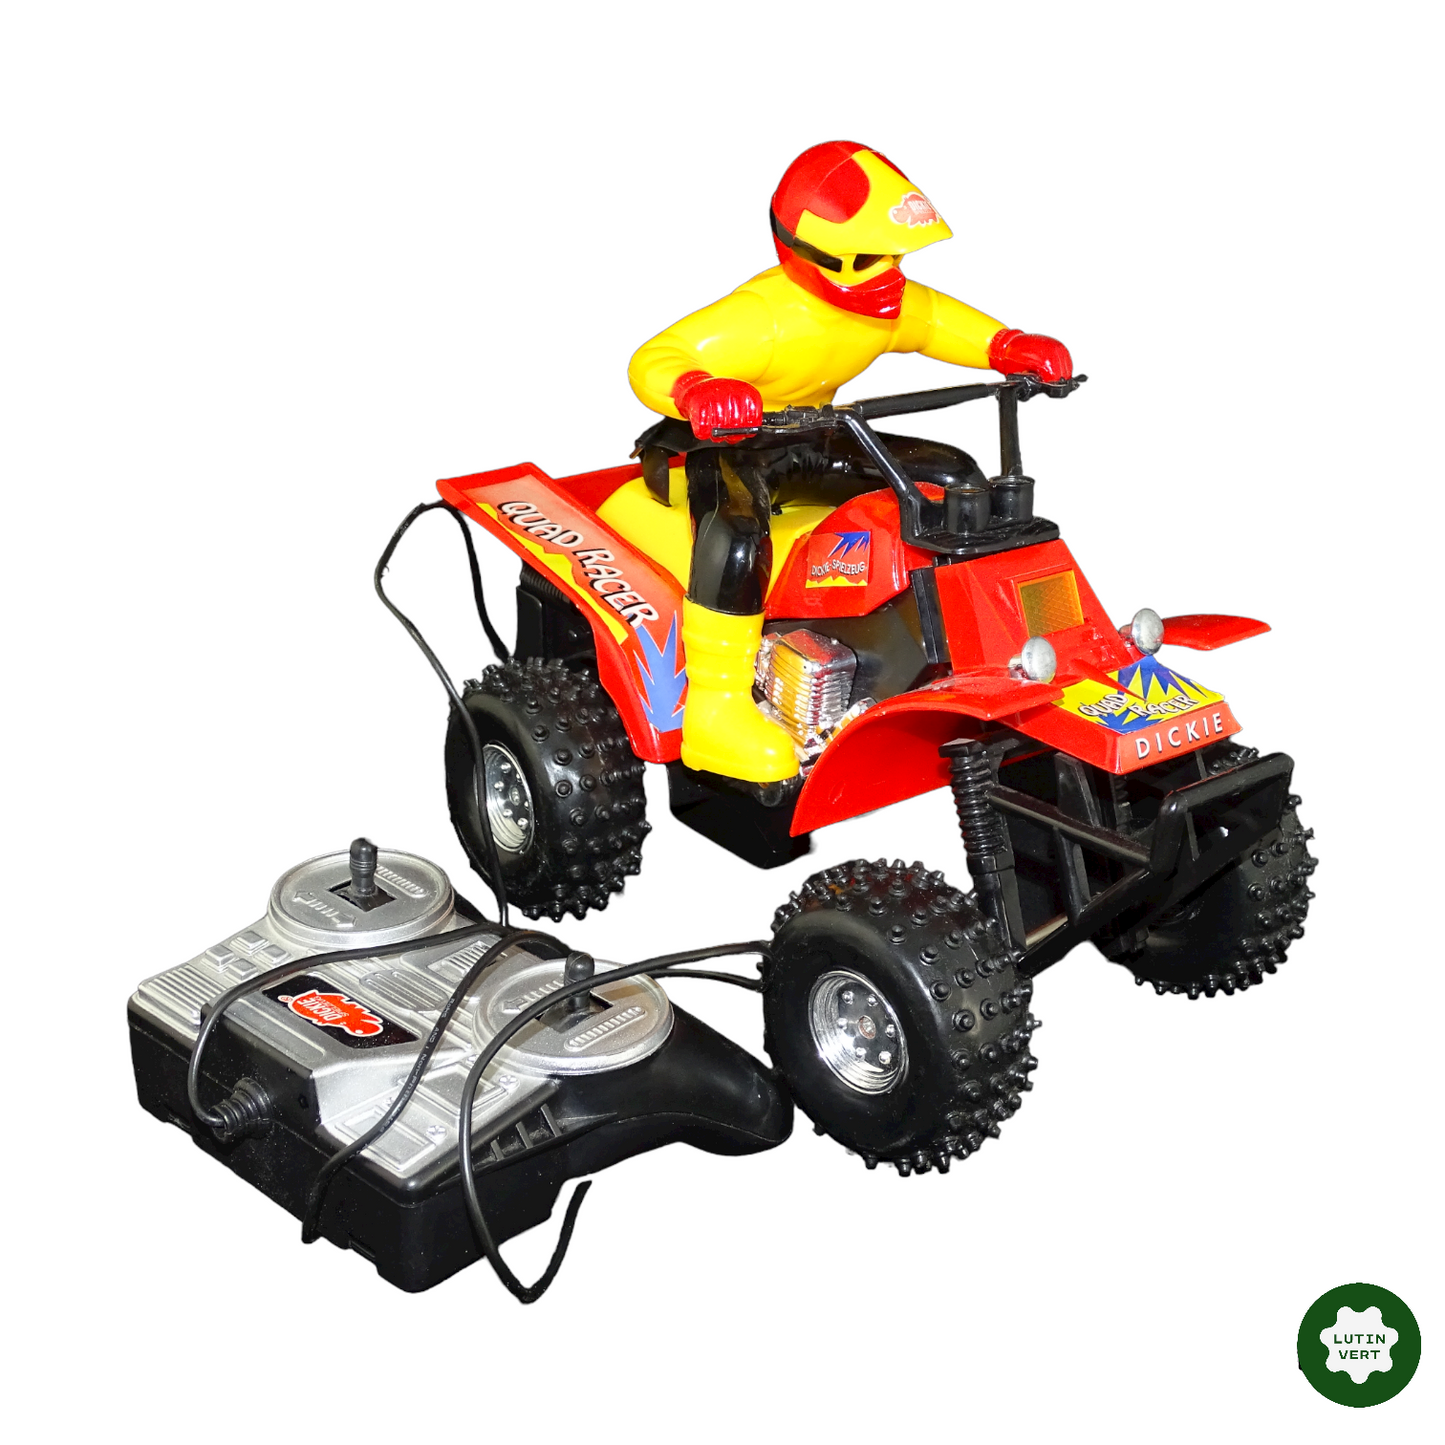 Quad Racer télécommandé d'occasion - Dickie Toys - Lutin Vert